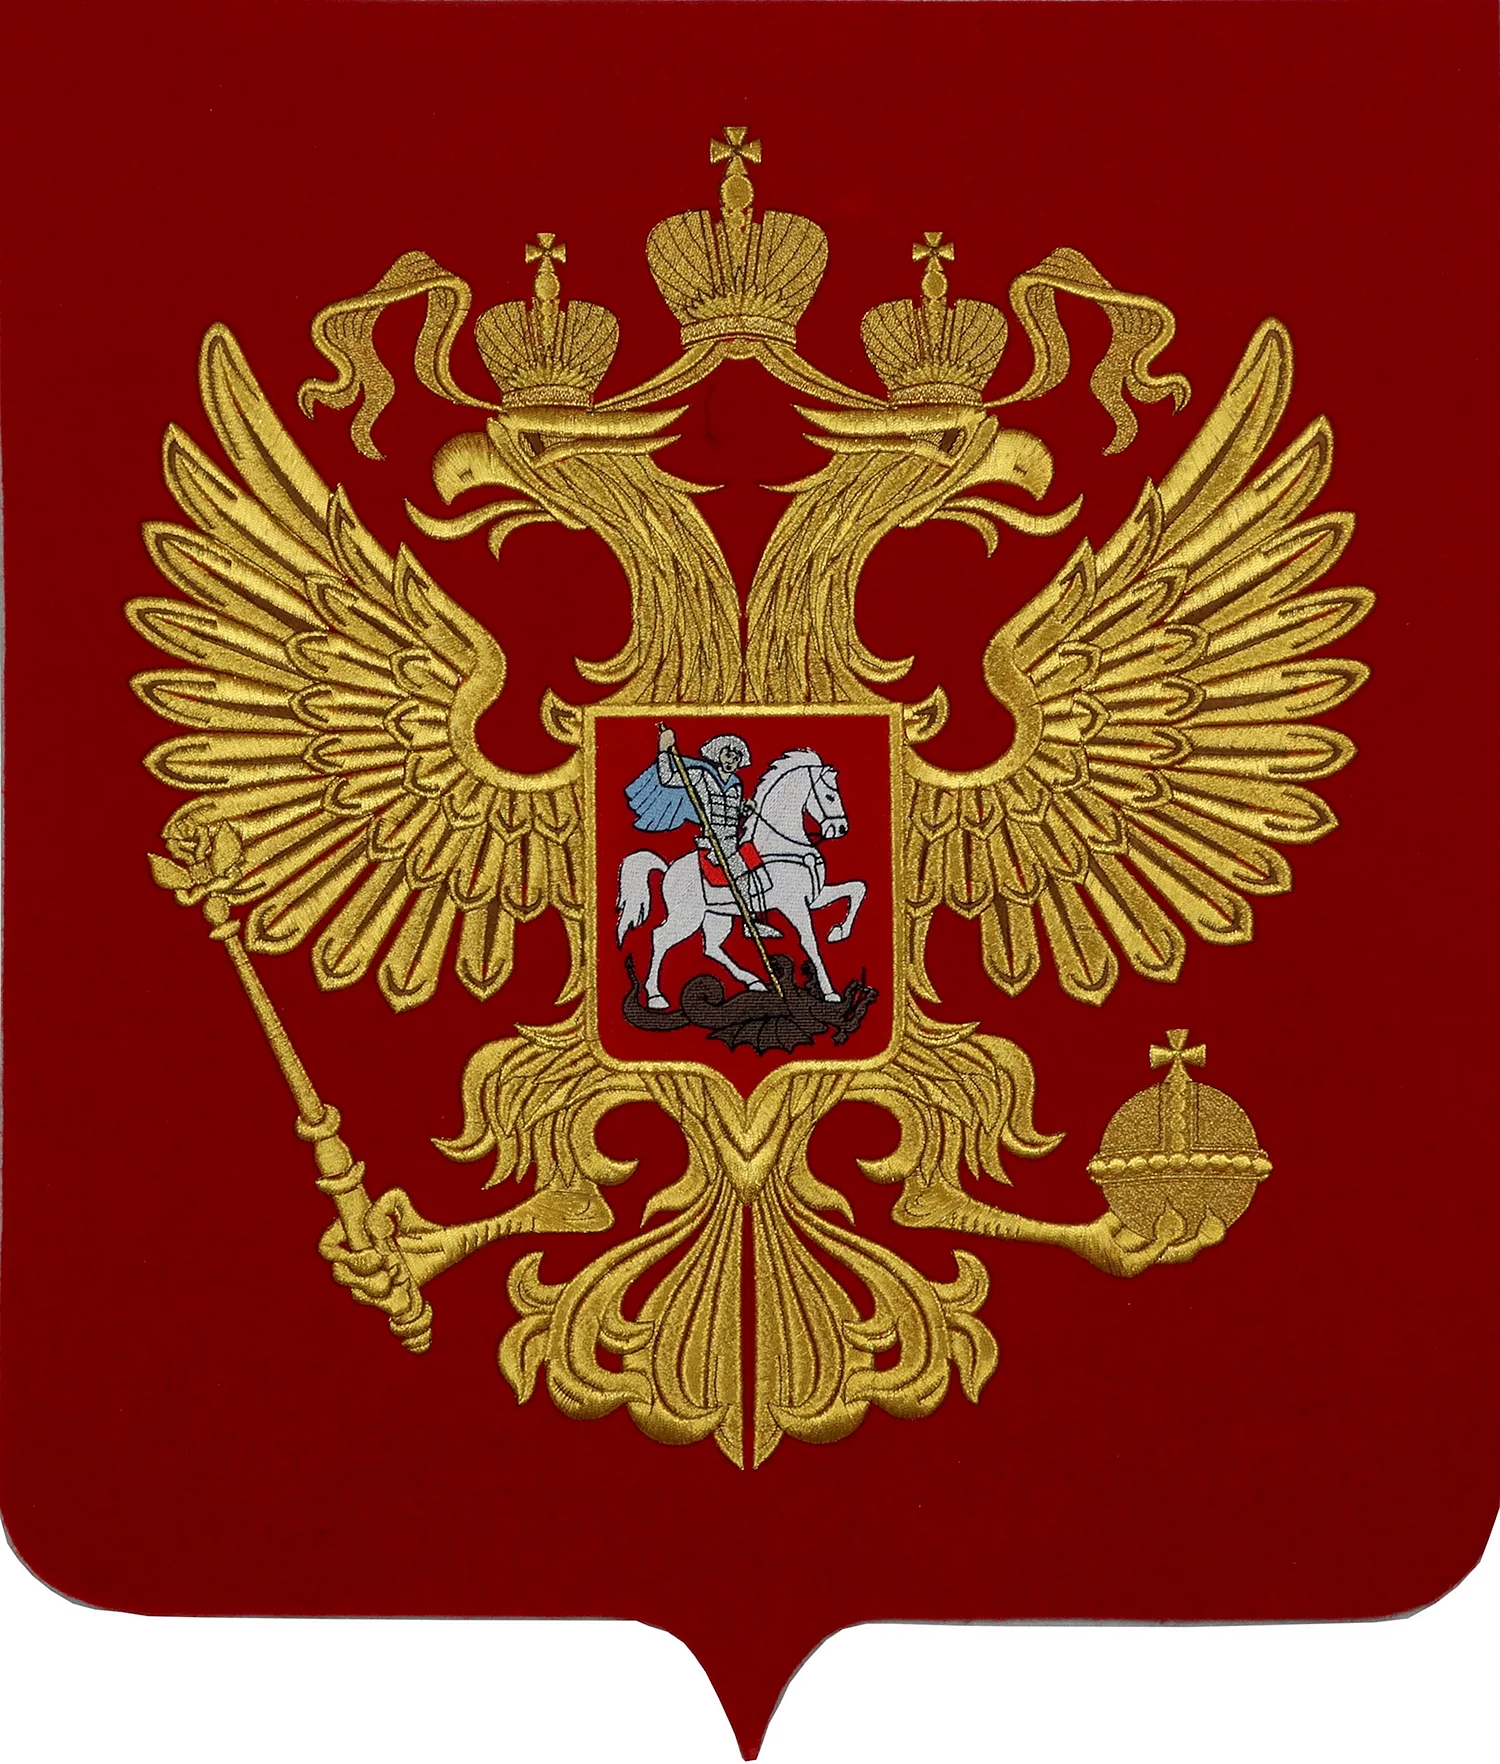 Государственный герб РФ